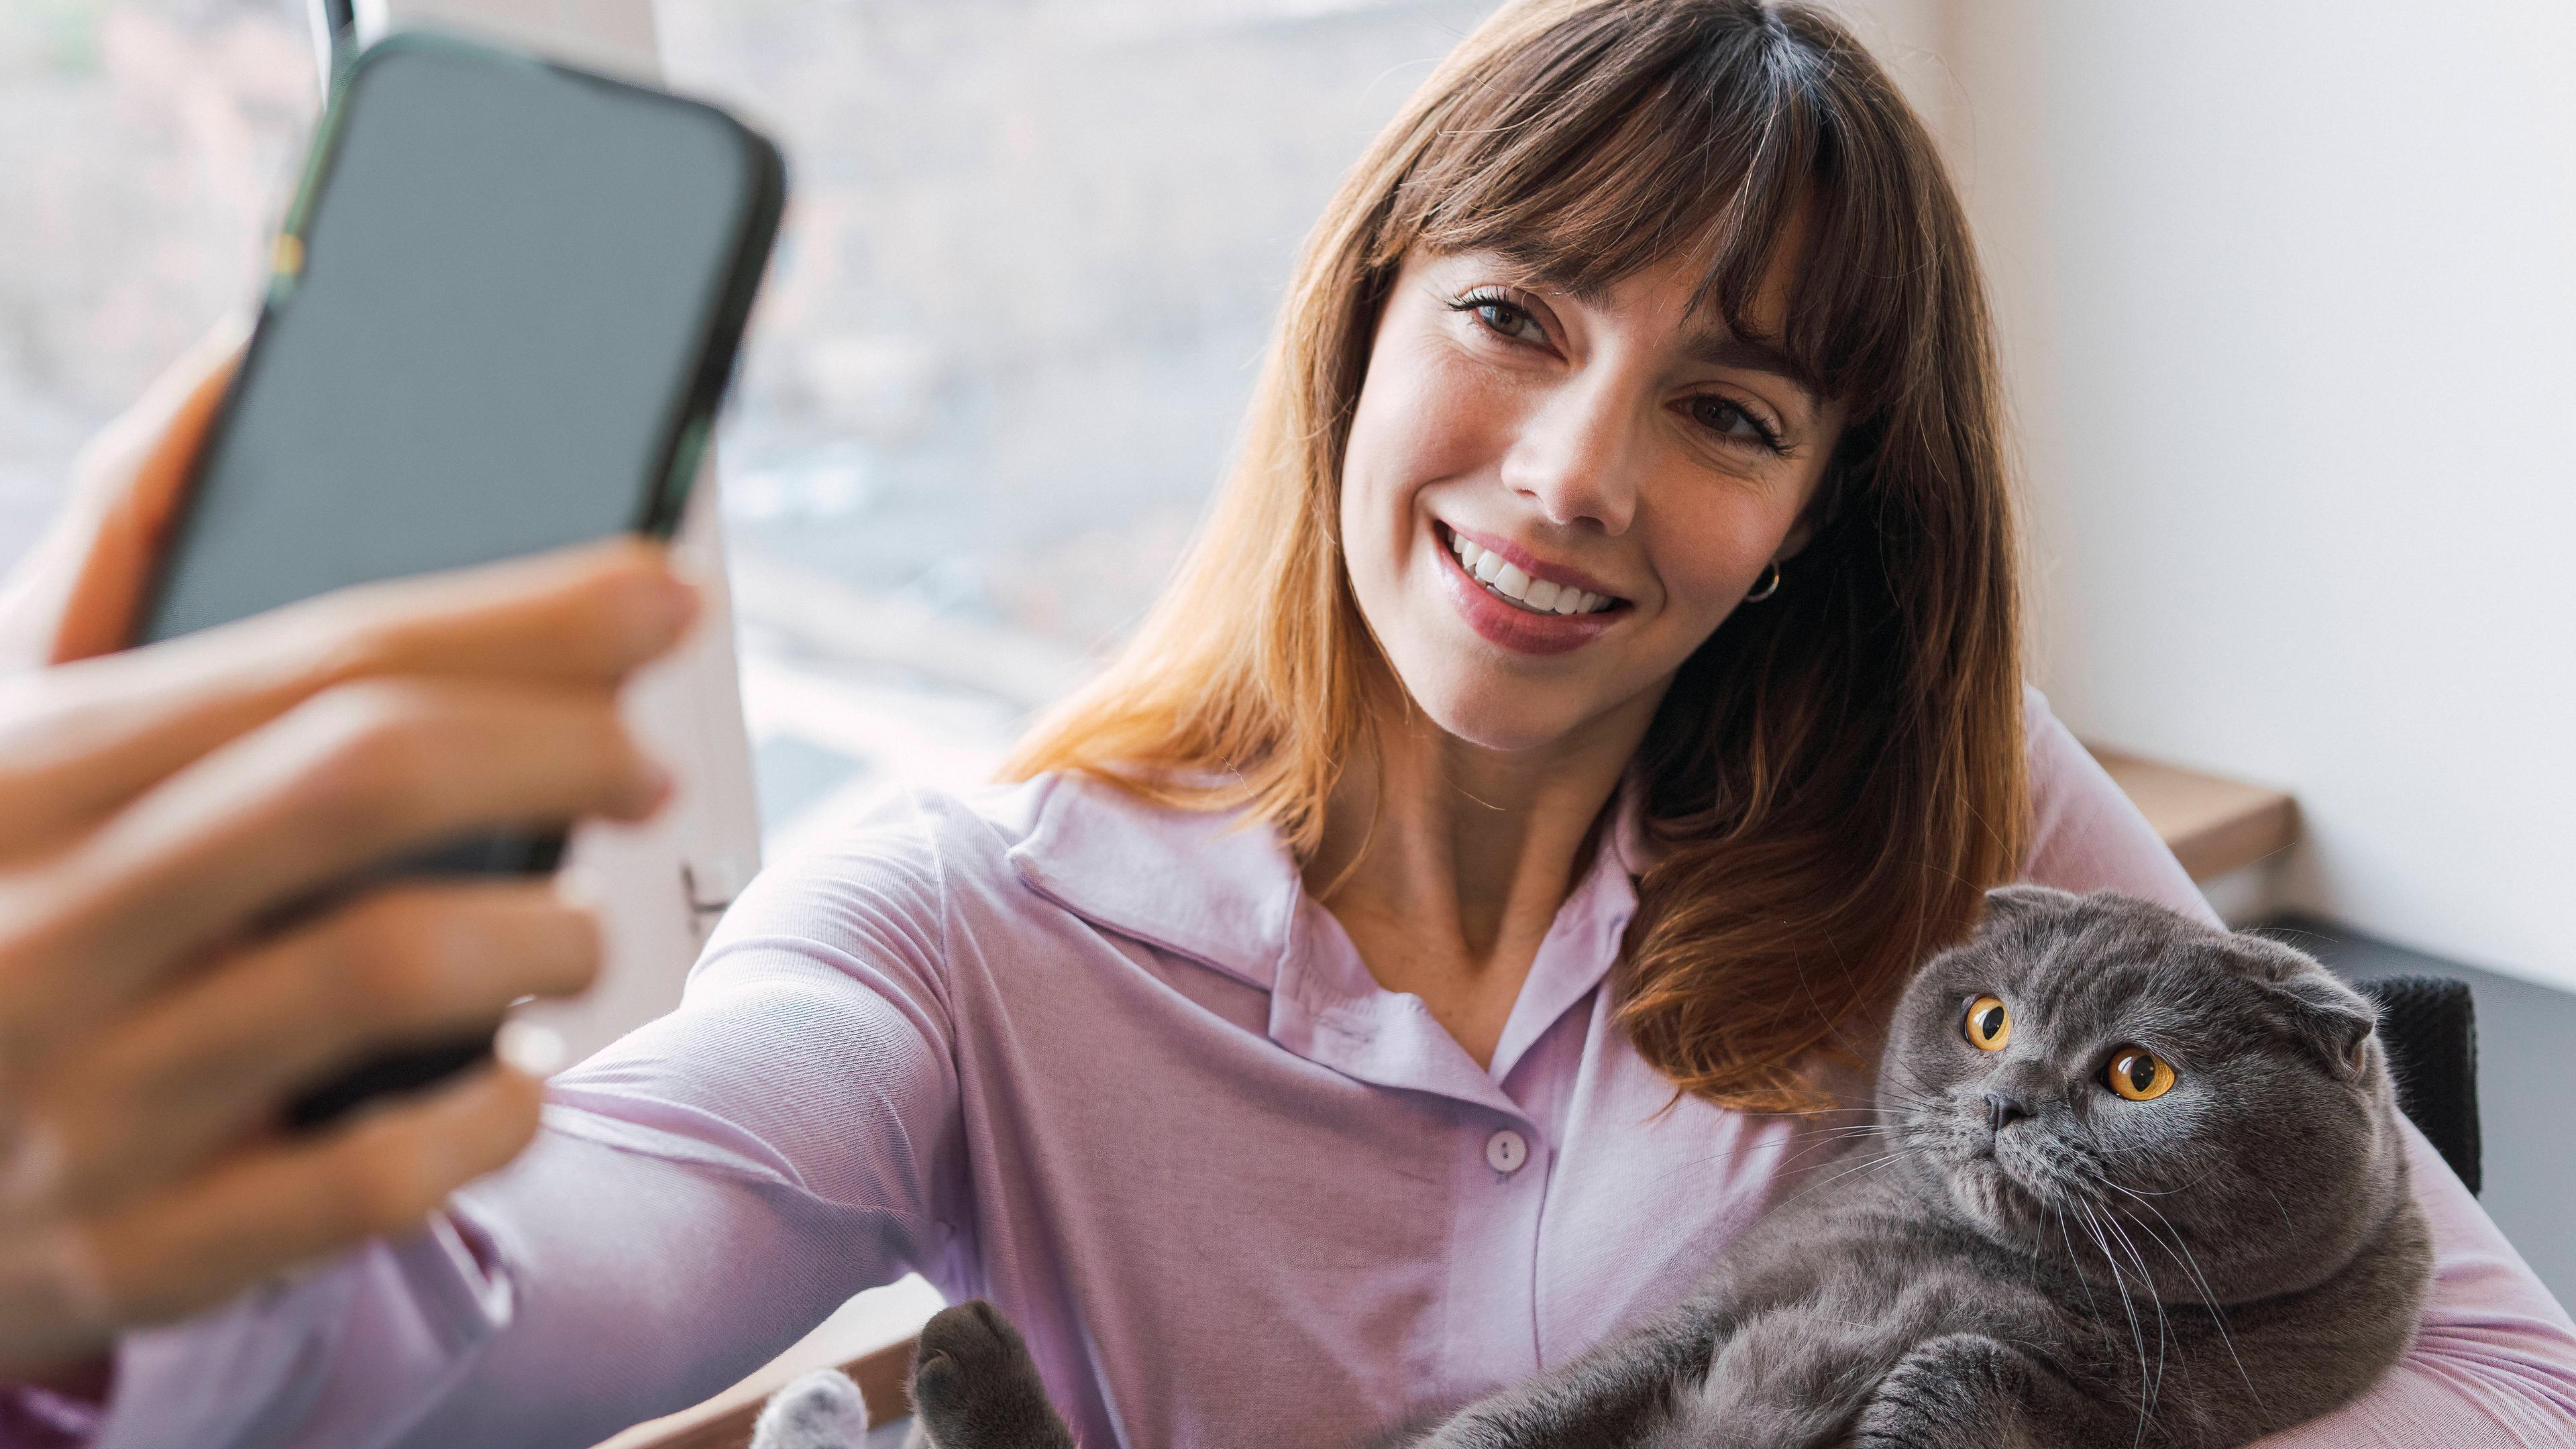 Eine Frau hält eine Katze auf dem Arm und fotografiert sich mit dem Smartphone.